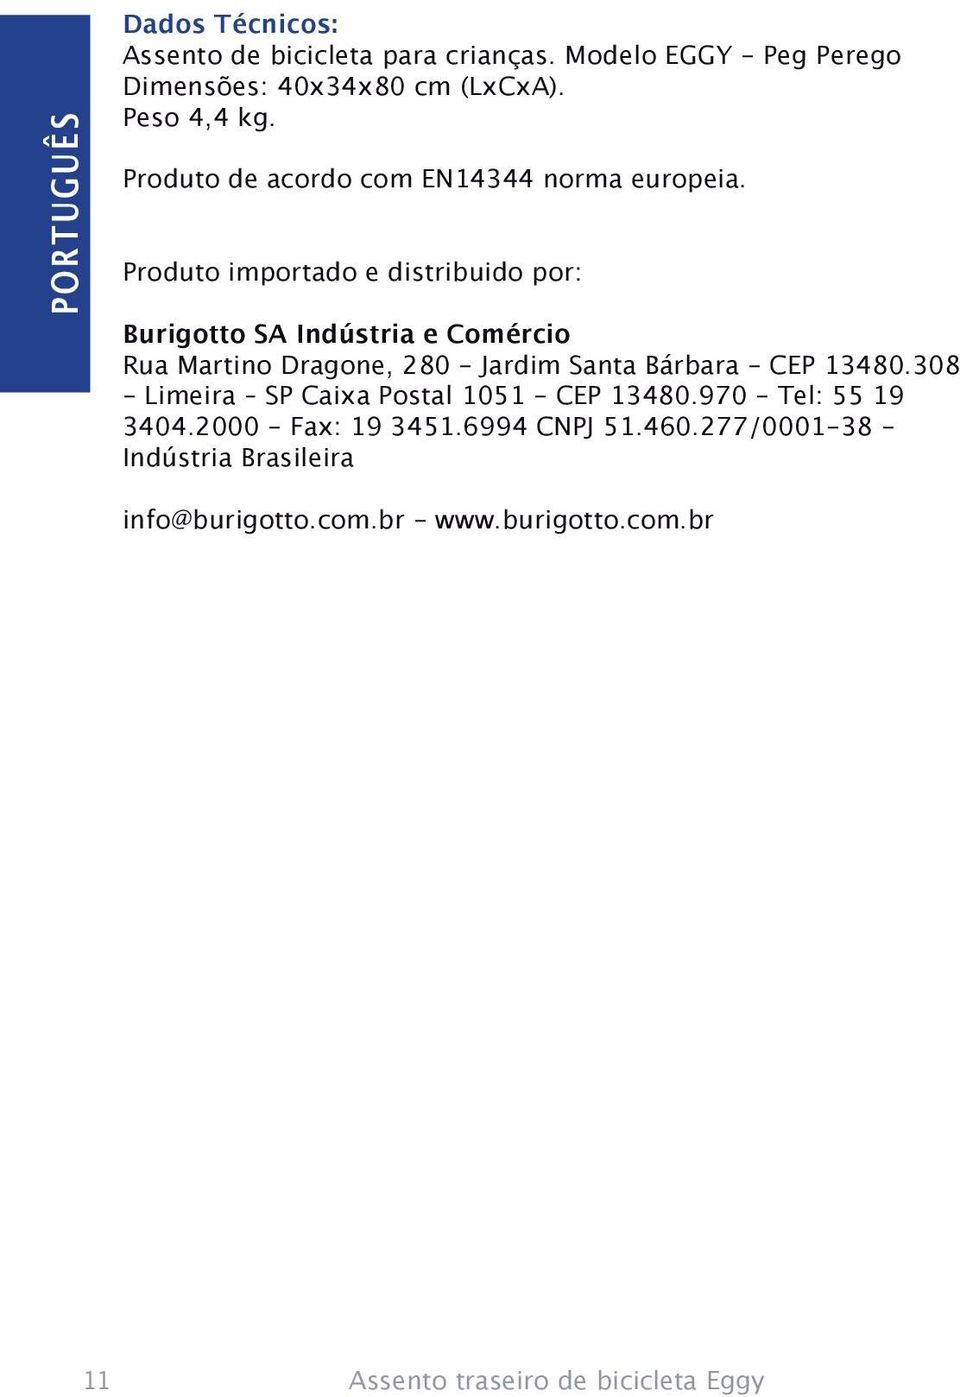 Produto importado e distribuido por: Burigotto SA Indústria e Comércio Rua Martino Dragone, 280 - Jardim Santa Bárbara - CEP 13480.